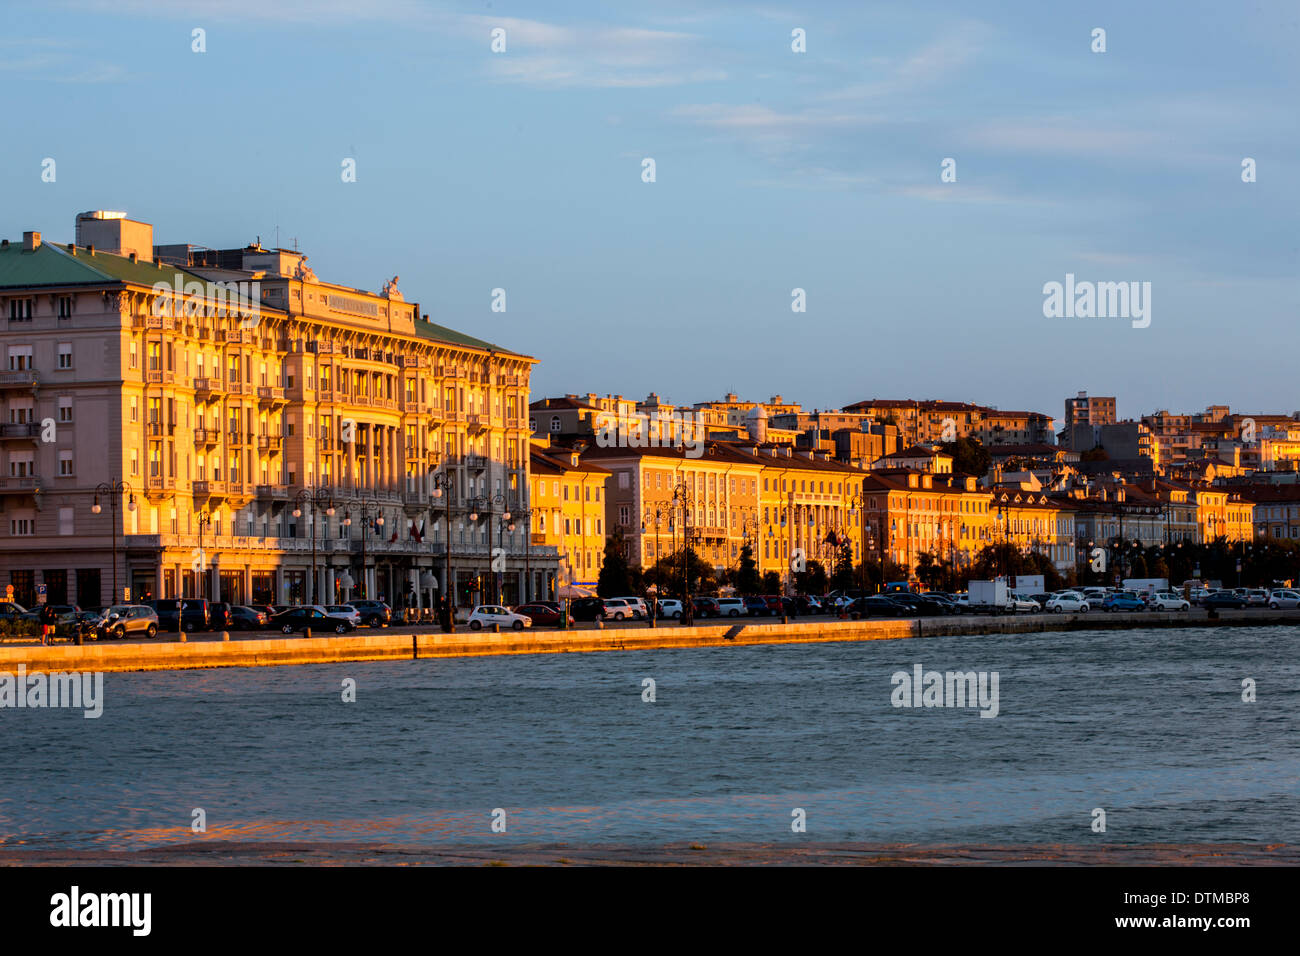 La bella città di Trieste piantato davanti al mare Adriatico Foto Stock